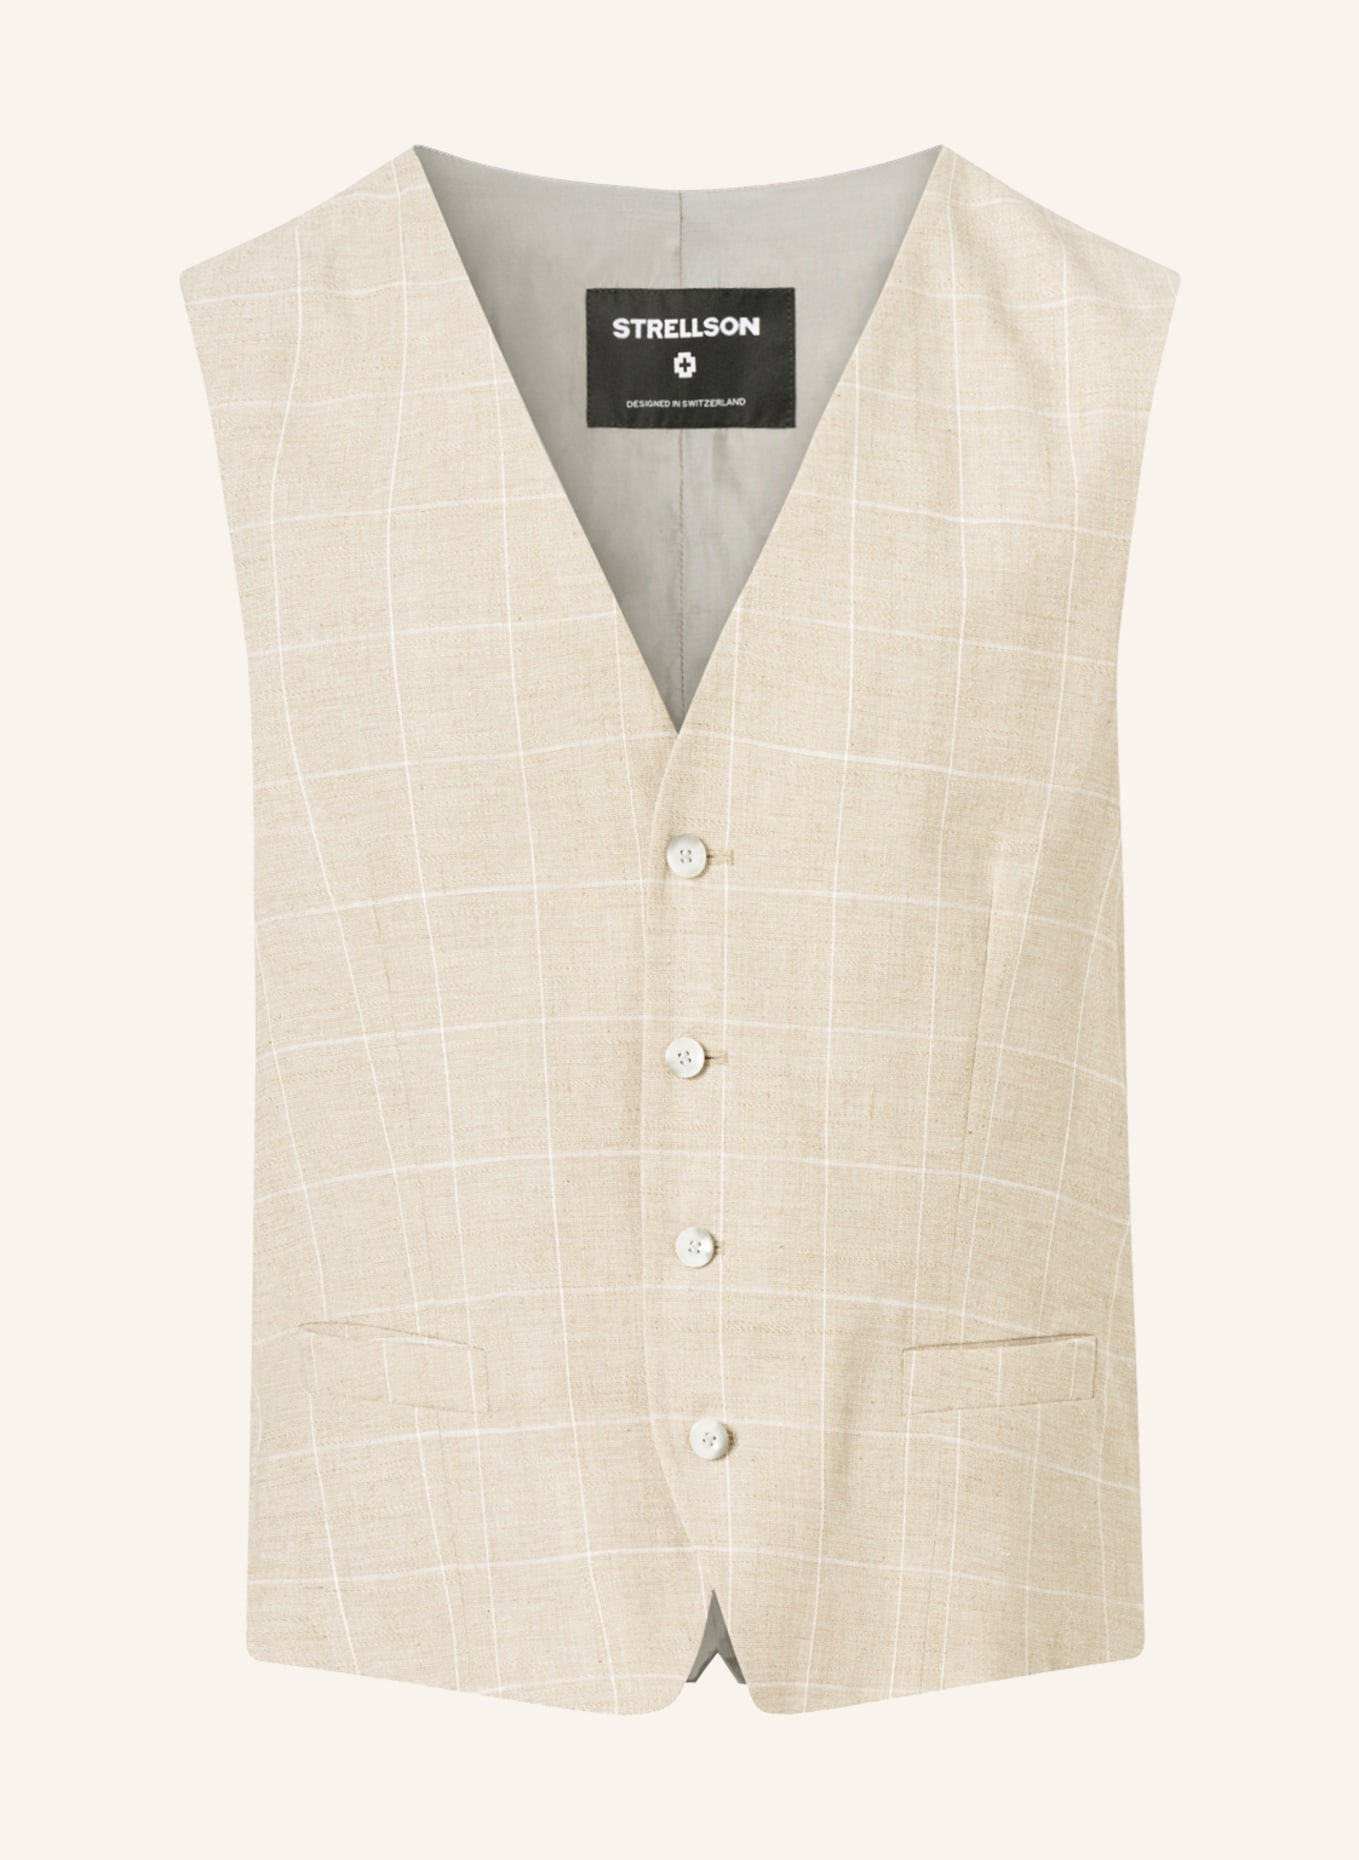 STRELLSON Suit vest GYL2 slim fit, Color: BEIGE (Image 1)